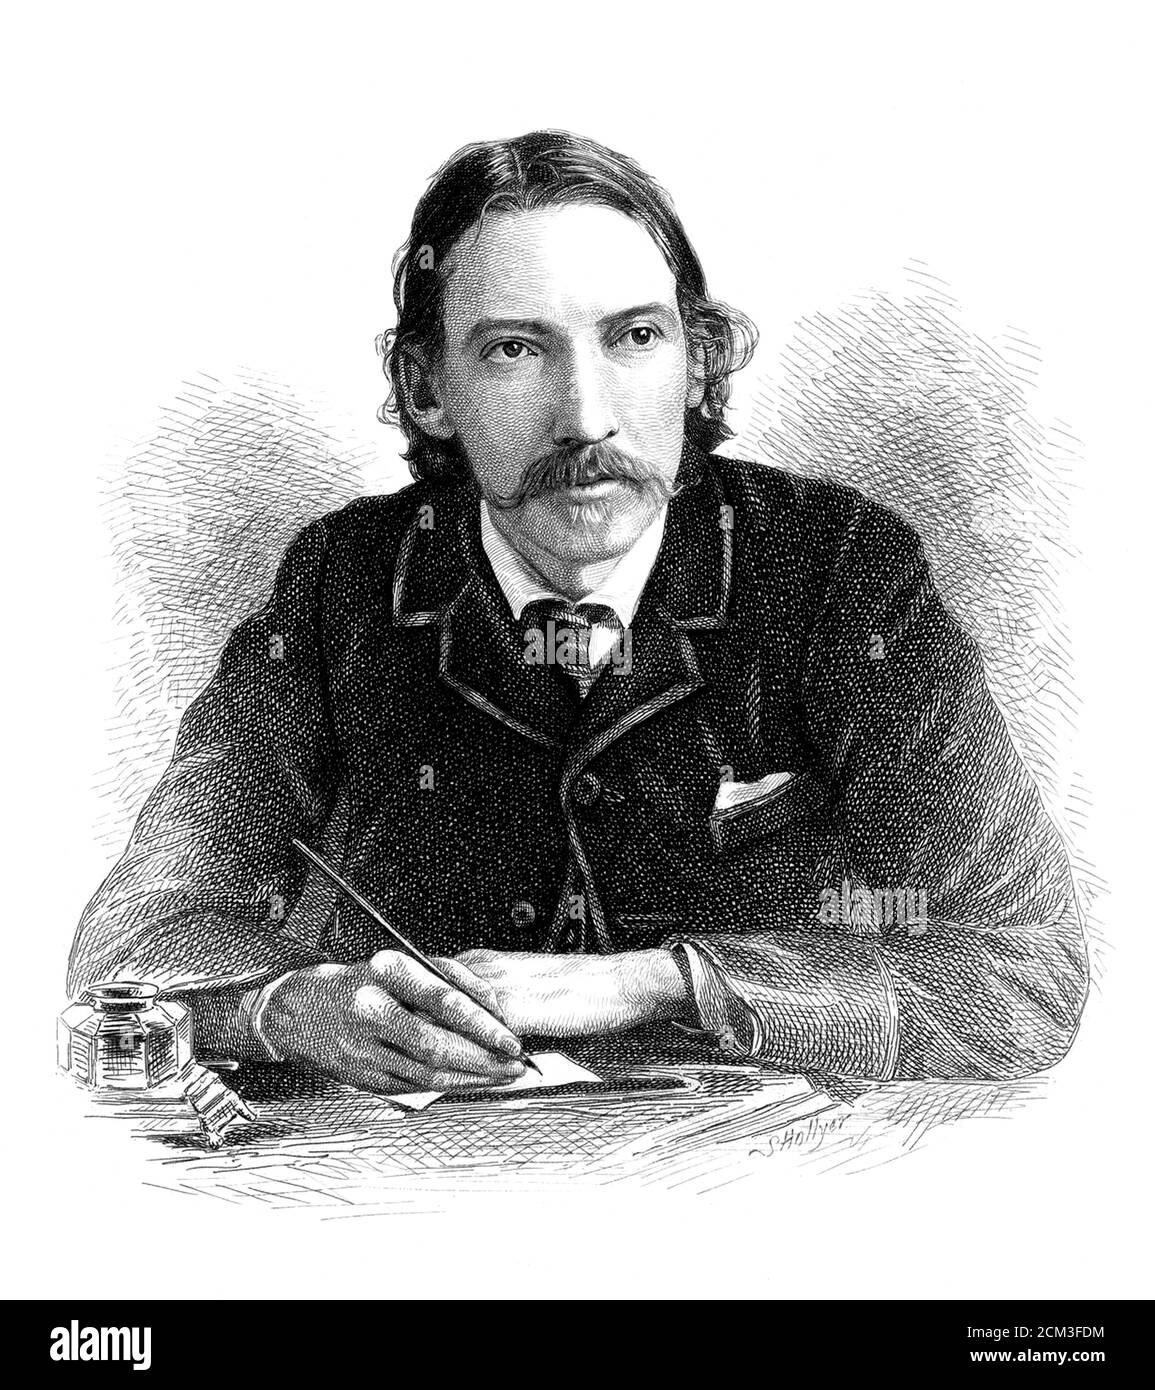 1885 c. , GRAND BRETAGNA : le célèbre écrivain écossais ROBERT LOUIS STEVENSON ( 1850 - 1894 ). Portrait gravé par S. Hollyer , d'une photographie prise par James Notman ( 1849 - 1932 ). - HISTOIRE - FOTO STORICHE - PORTRAIT - SCRITTORE - ÉCRIVAIN - LETTERATURA - LITTÉRATURE - ILLUSTRAZIONE - ILLUSTRATION - INCISIONE -- ARCHIVIO GBB Banque D'Images